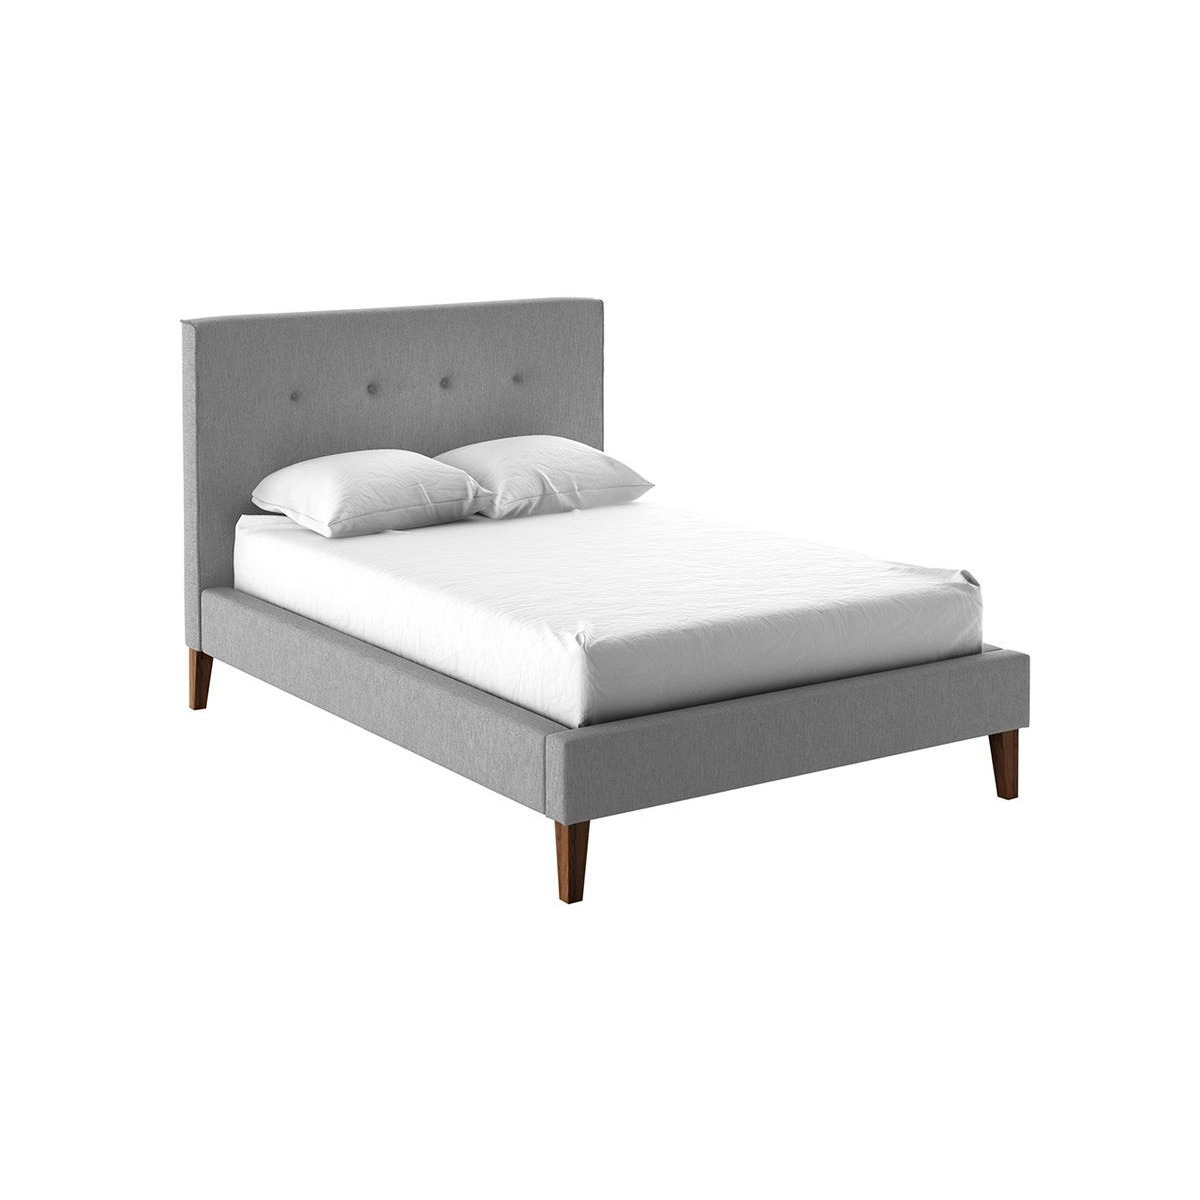 Inspire Upholstered Bed Frame, light grey - image 1